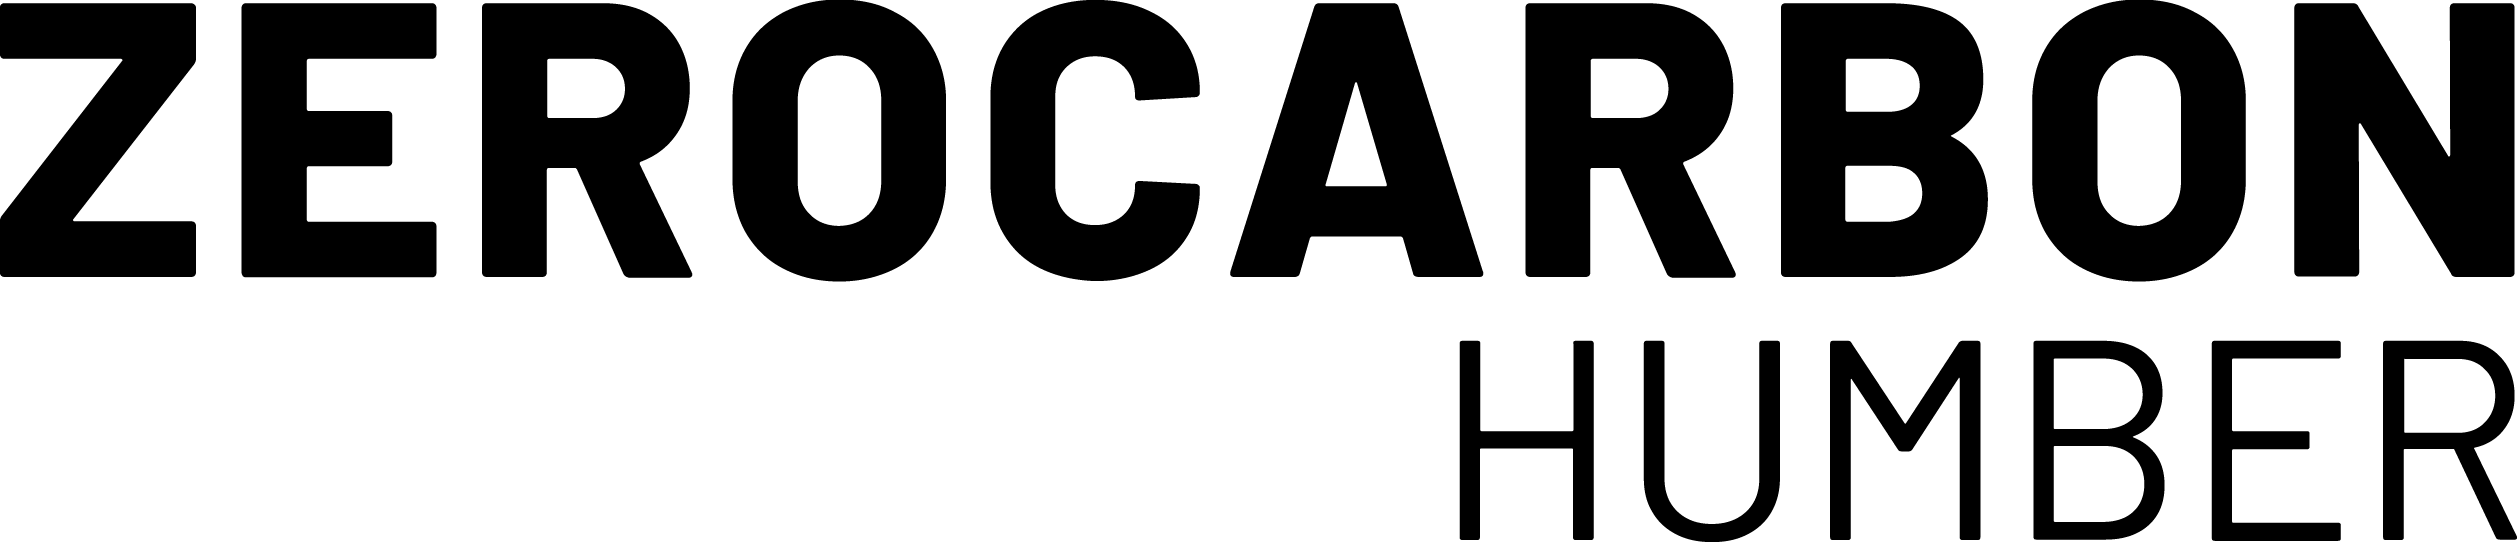 Zero Carbon Humber logo